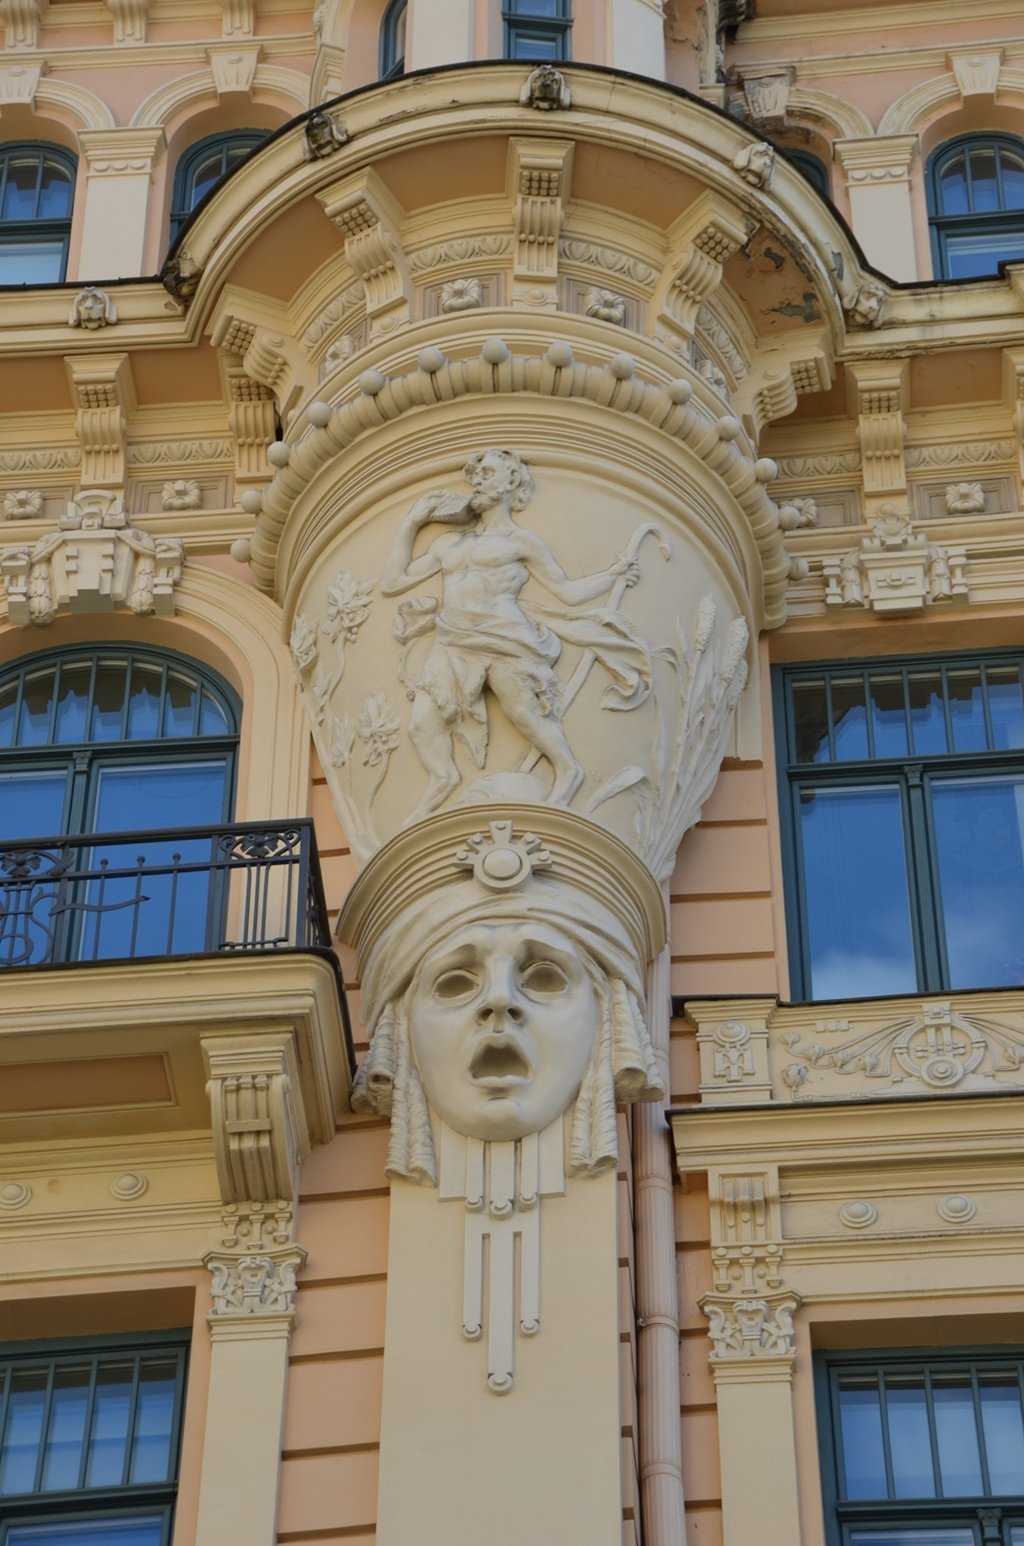 Alberta iela 13 adresindeki Art Nouveau apartmandan detay – Maskenin tacı özgürlük, güneş ve zaferi temsil ediyor…